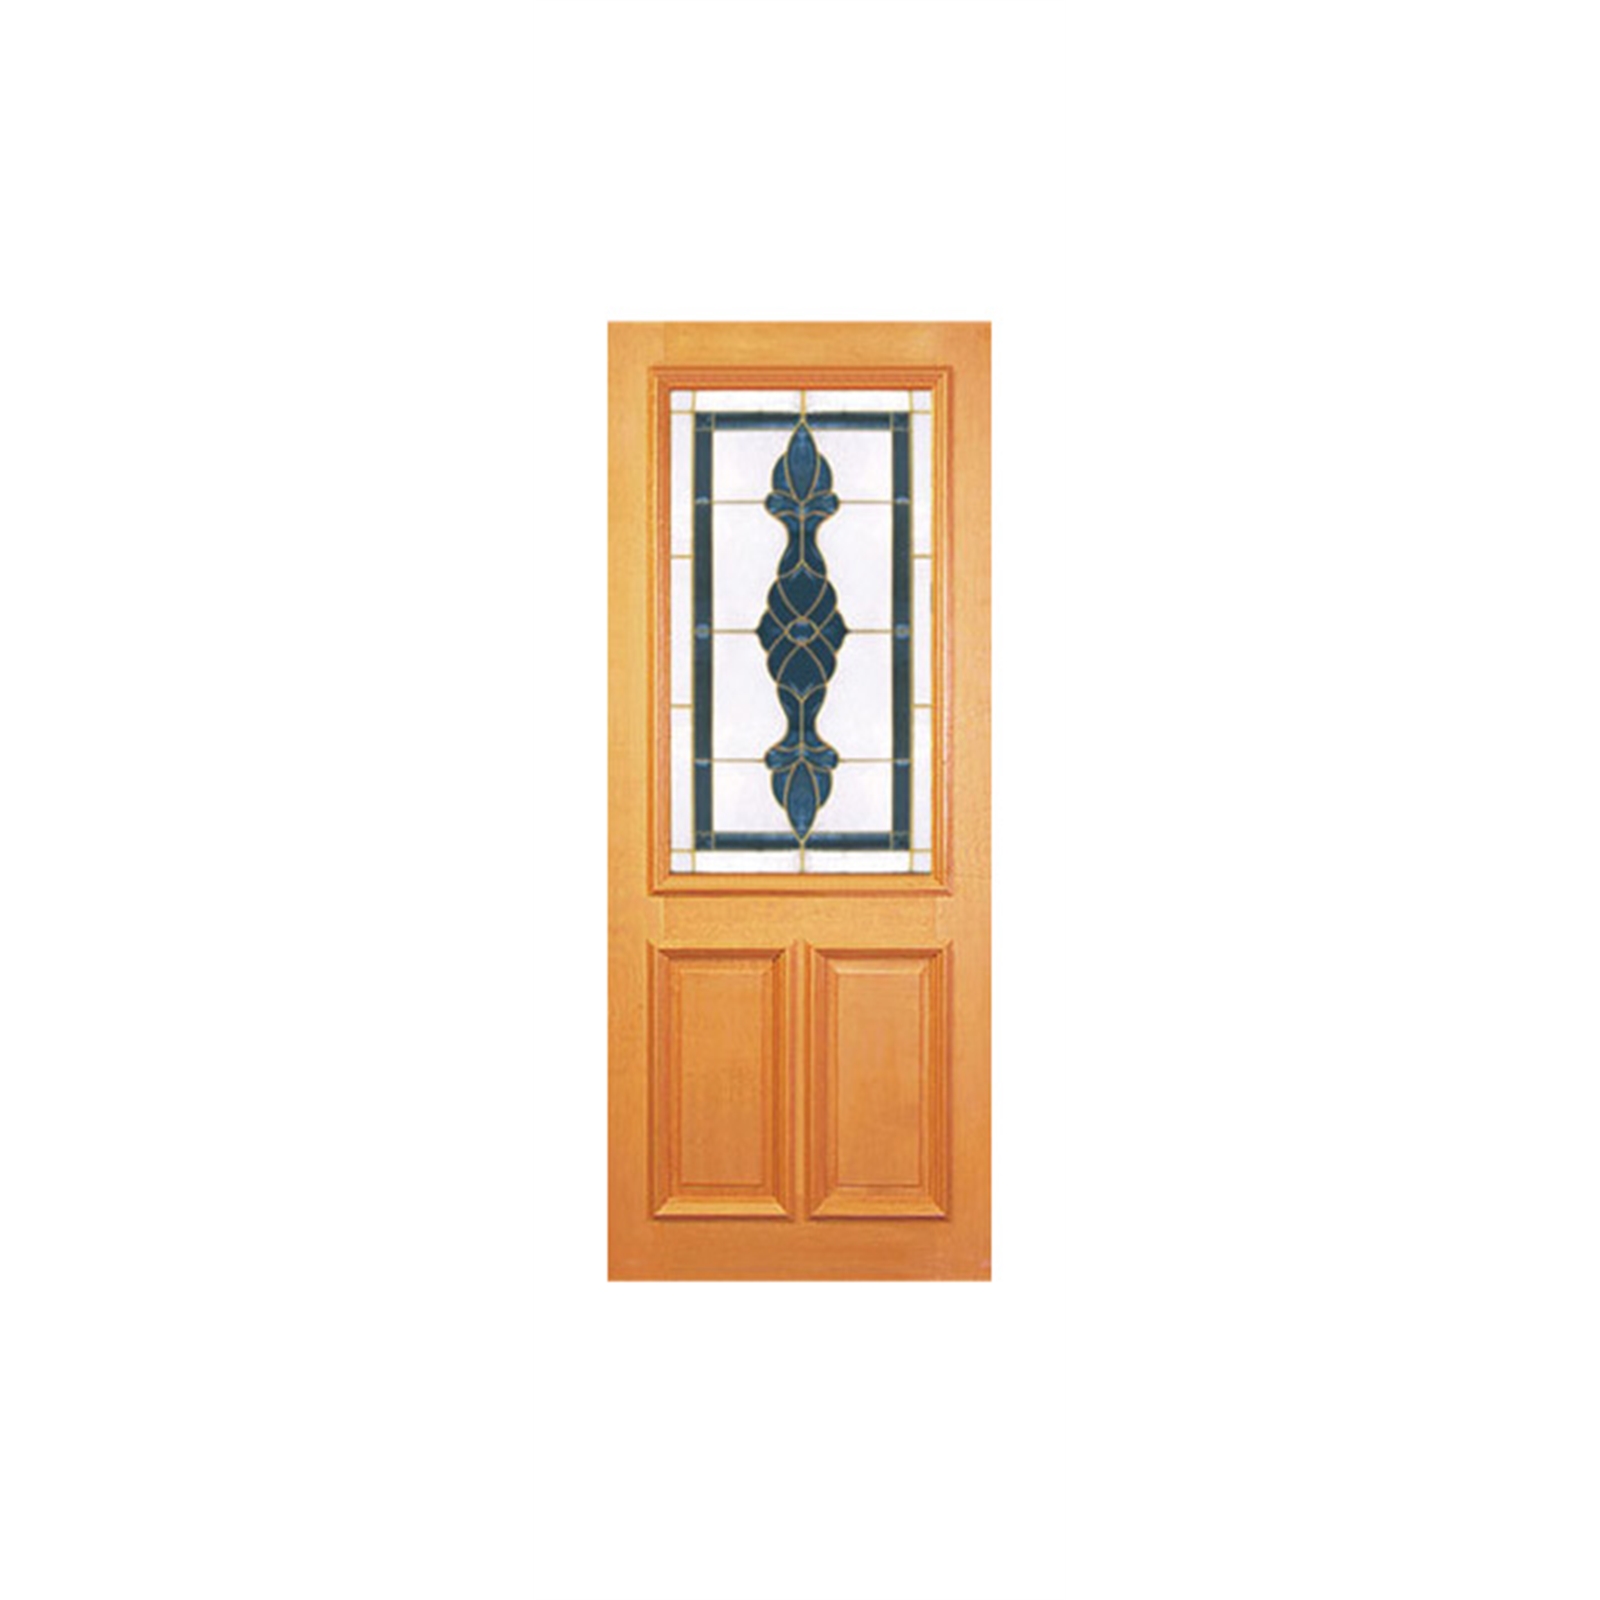 Woodcraft Doors 2040 x 820 x 40mm Blue Leadlight Half Lite Entrance Door